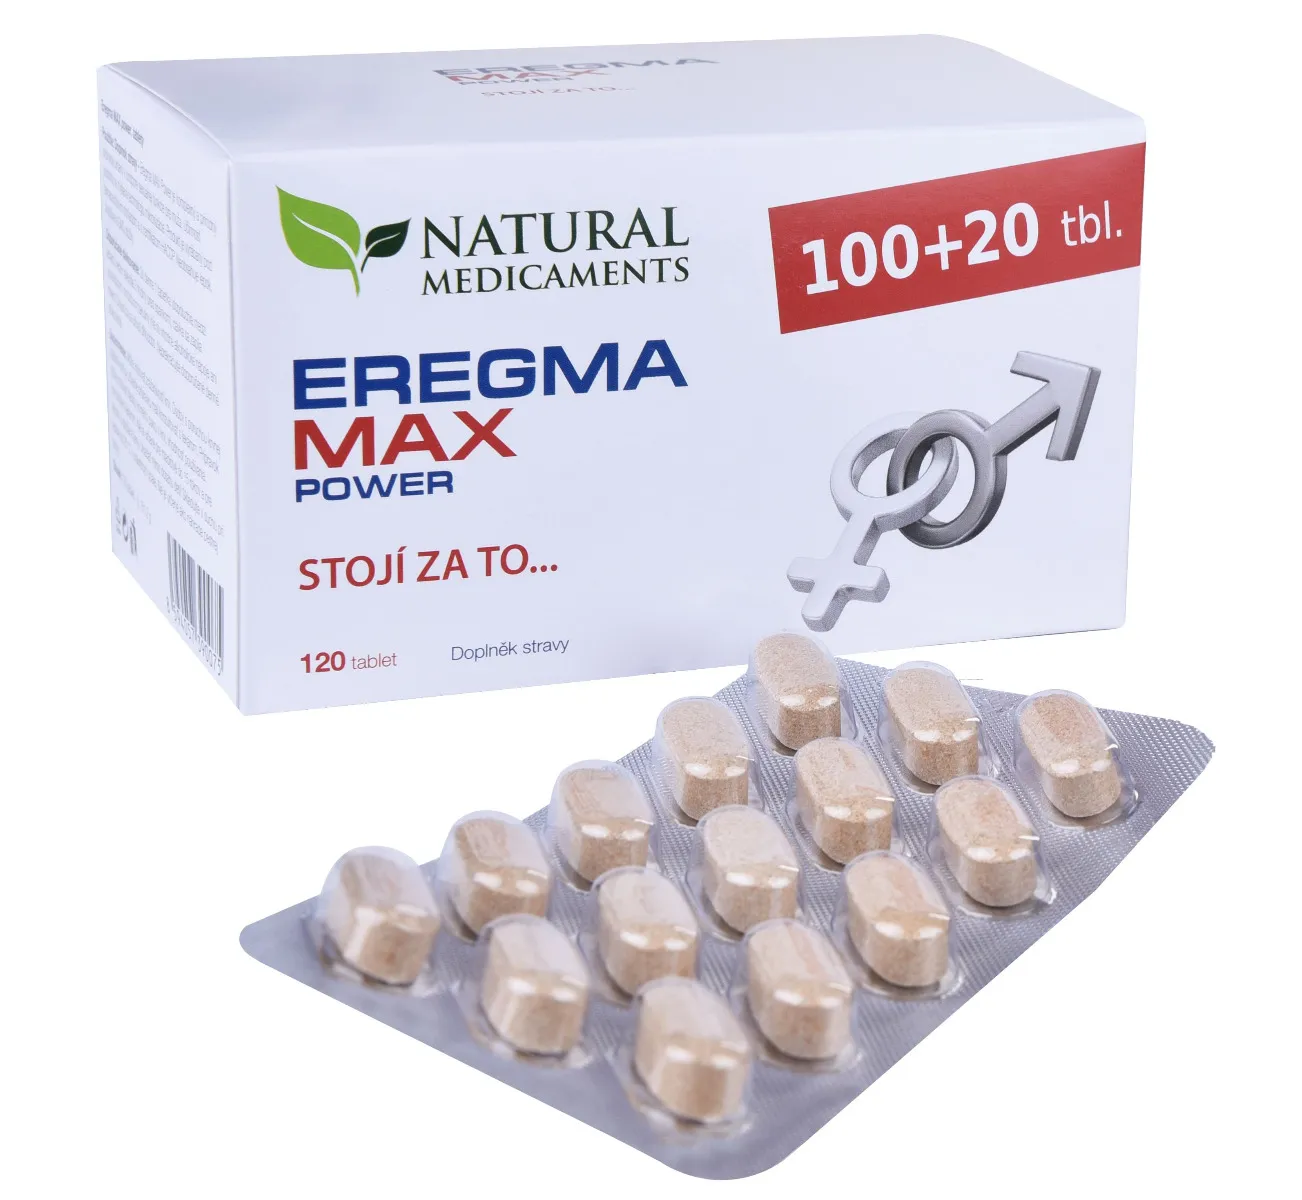 Natural Medicaments Eregma Max Power 120 tablet